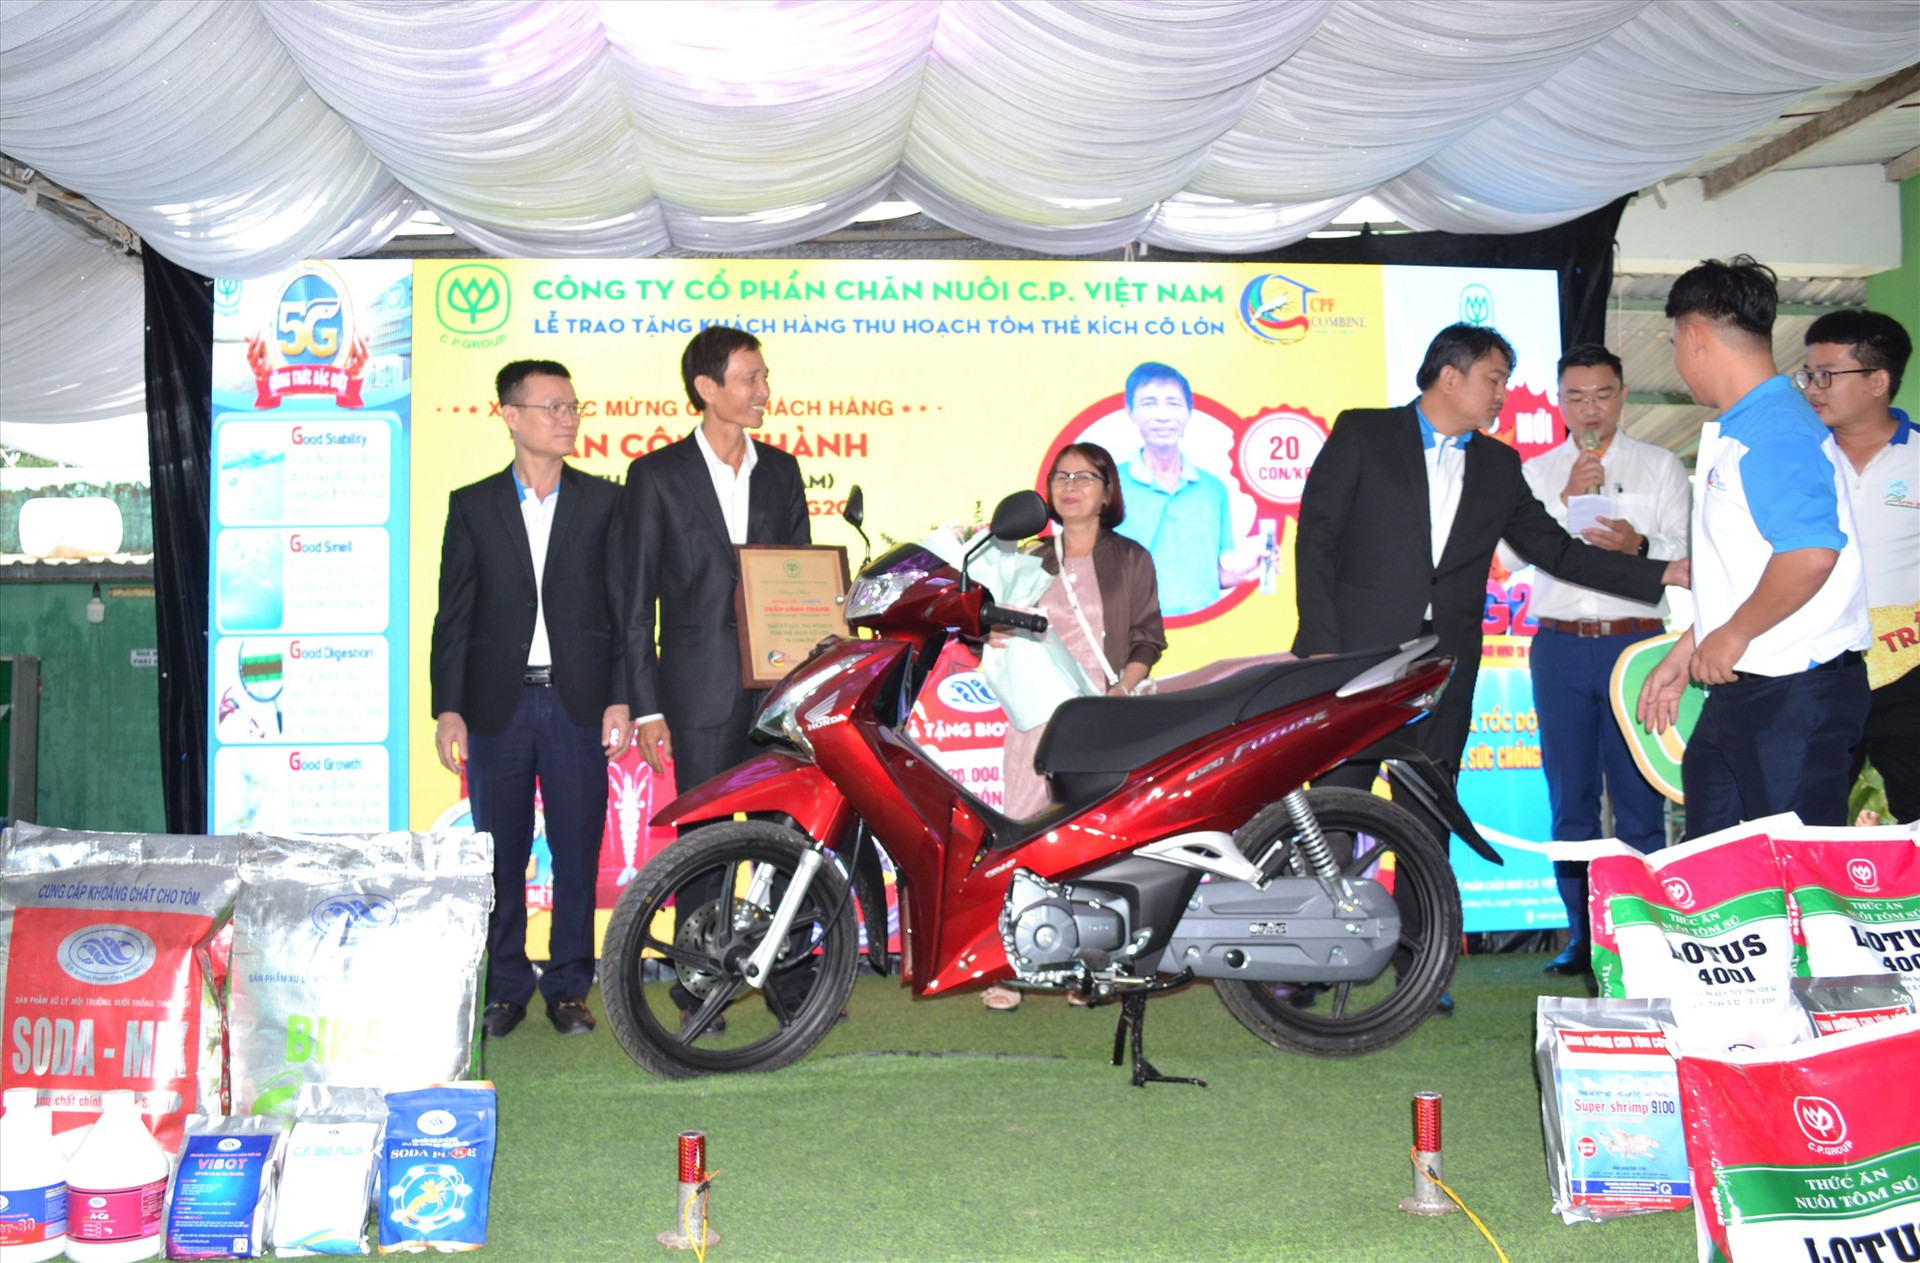 Ông Trần Công Thành (thứ 2 từ trái sang0 được Công ty CP Chăn nuôi C.P. Việt Nam thưởng xe máy Future nhờ nuôi tôm đạt cỡ 20 con/kg. Ảnh: Q.VIỆT